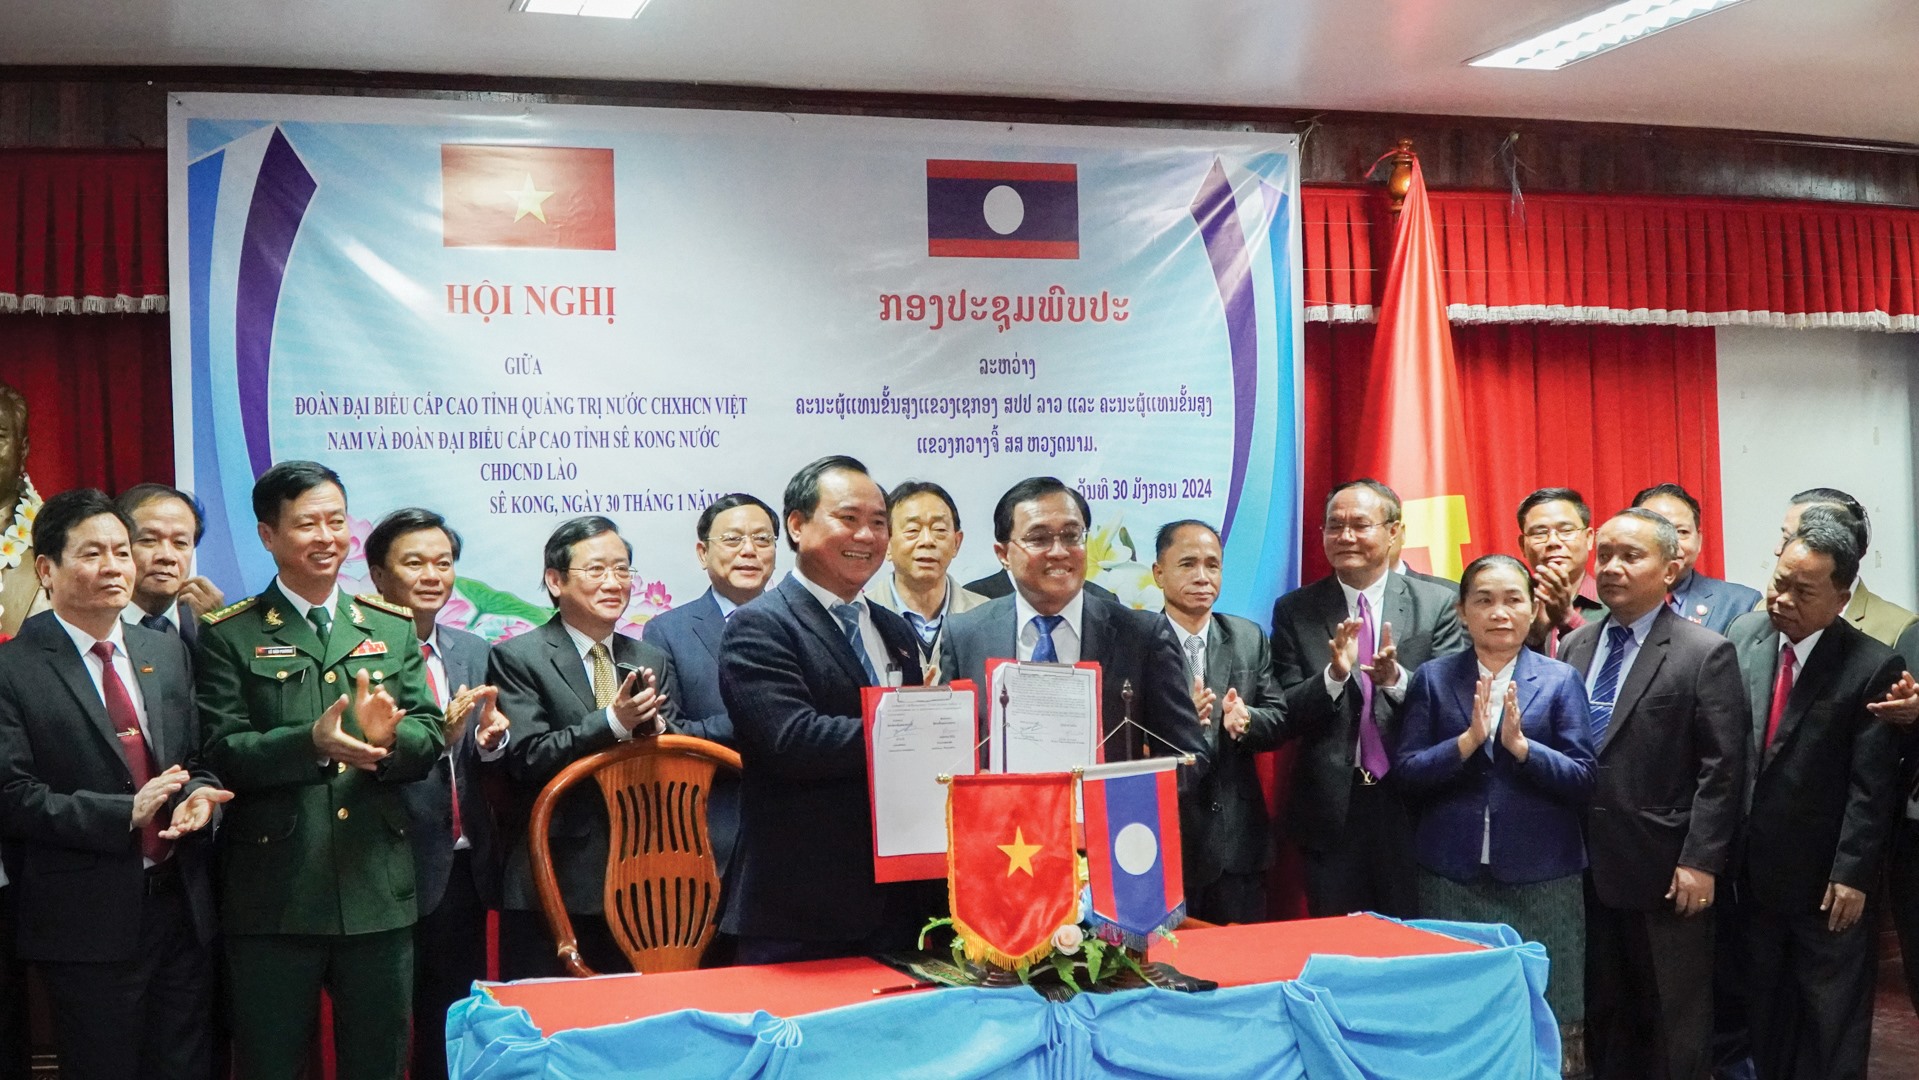 Lãnh đạo 2 tỉnh Quảng Trị và Sekong ký kết biên bản ghi nhớ đẩy mạnh hợp tác trong hoạt động xuất, nhập khẩu than đá - Ảnh: L.T